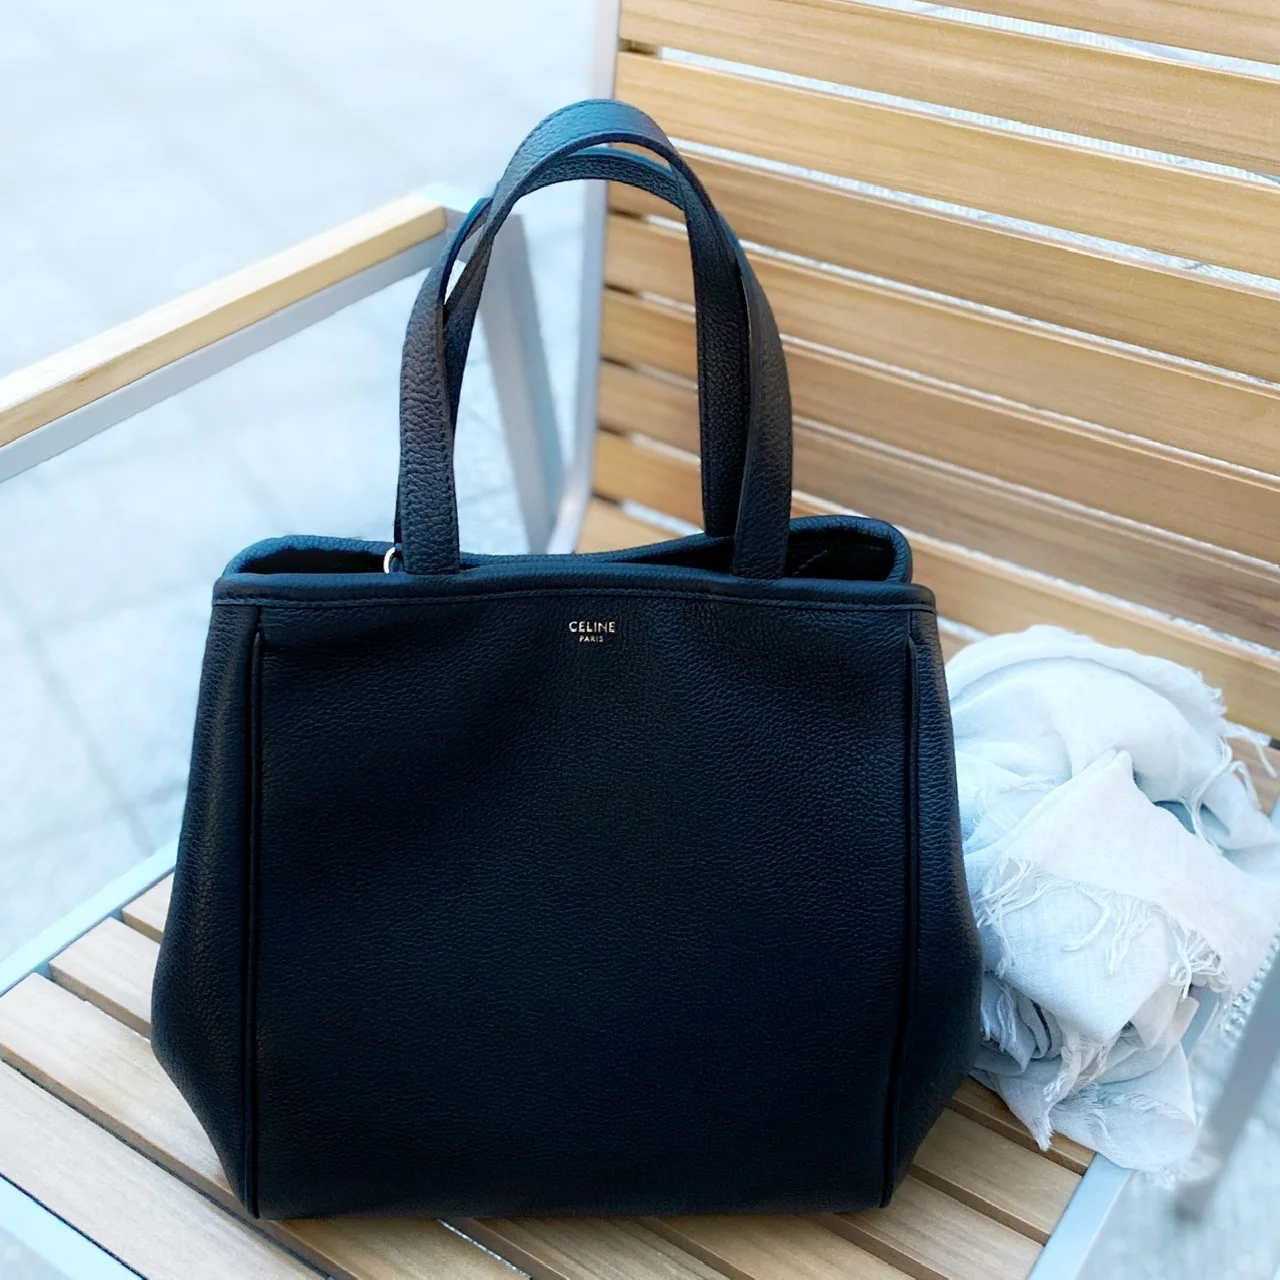 魅了される『黒』素敵なバッグに出逢えました | ファッション誌Marisol ...